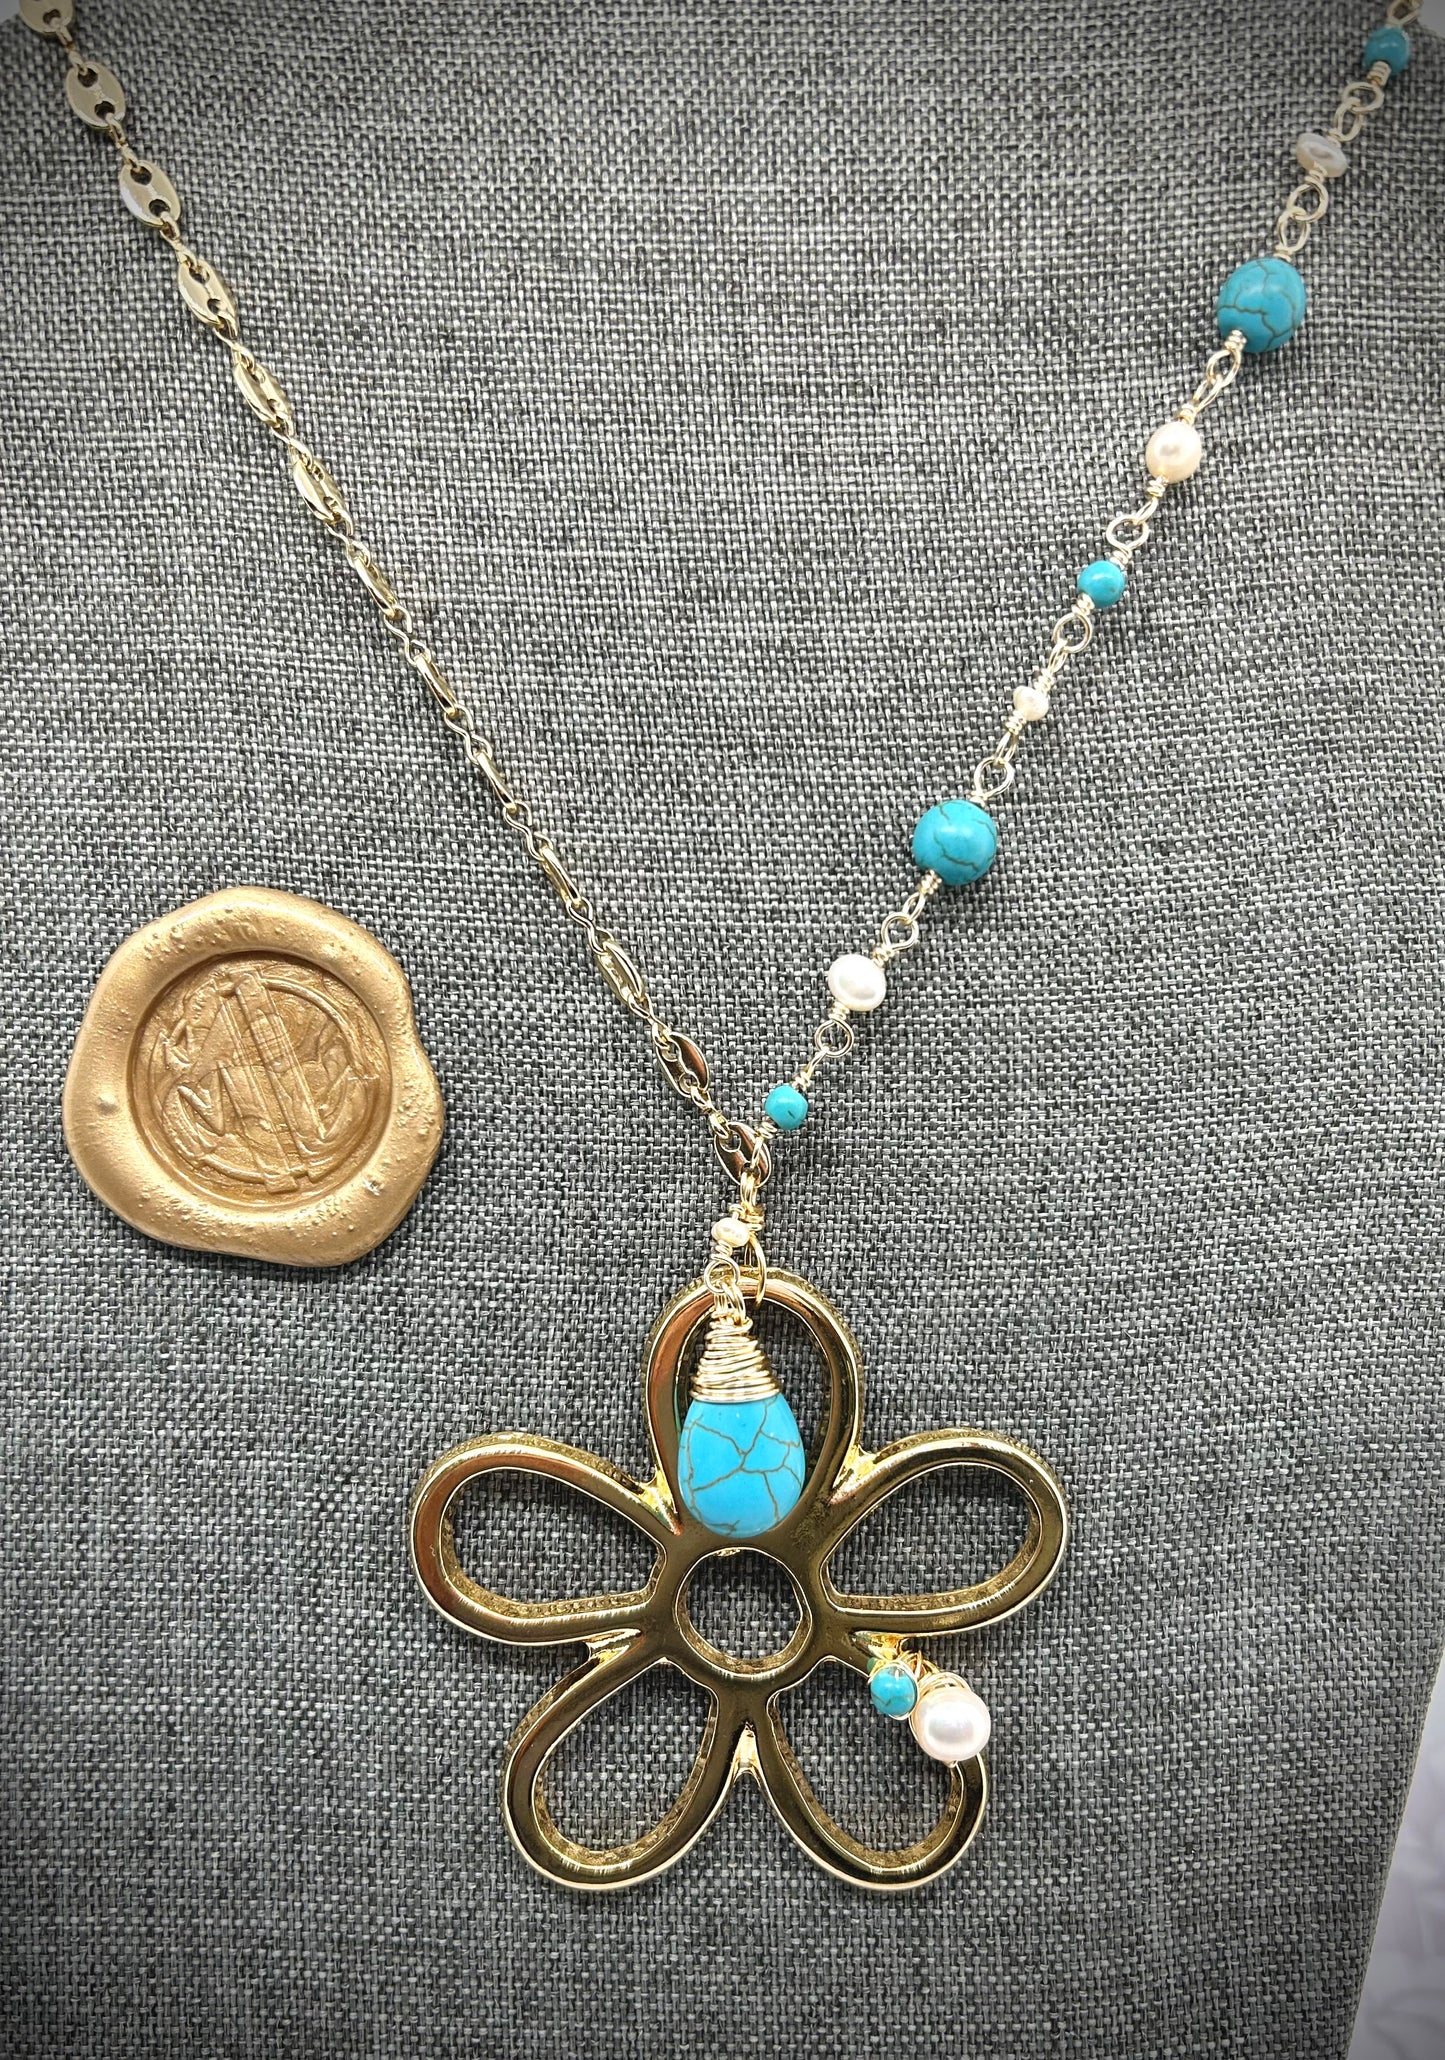 Necklace flor , cadena, turquesas y perlas.